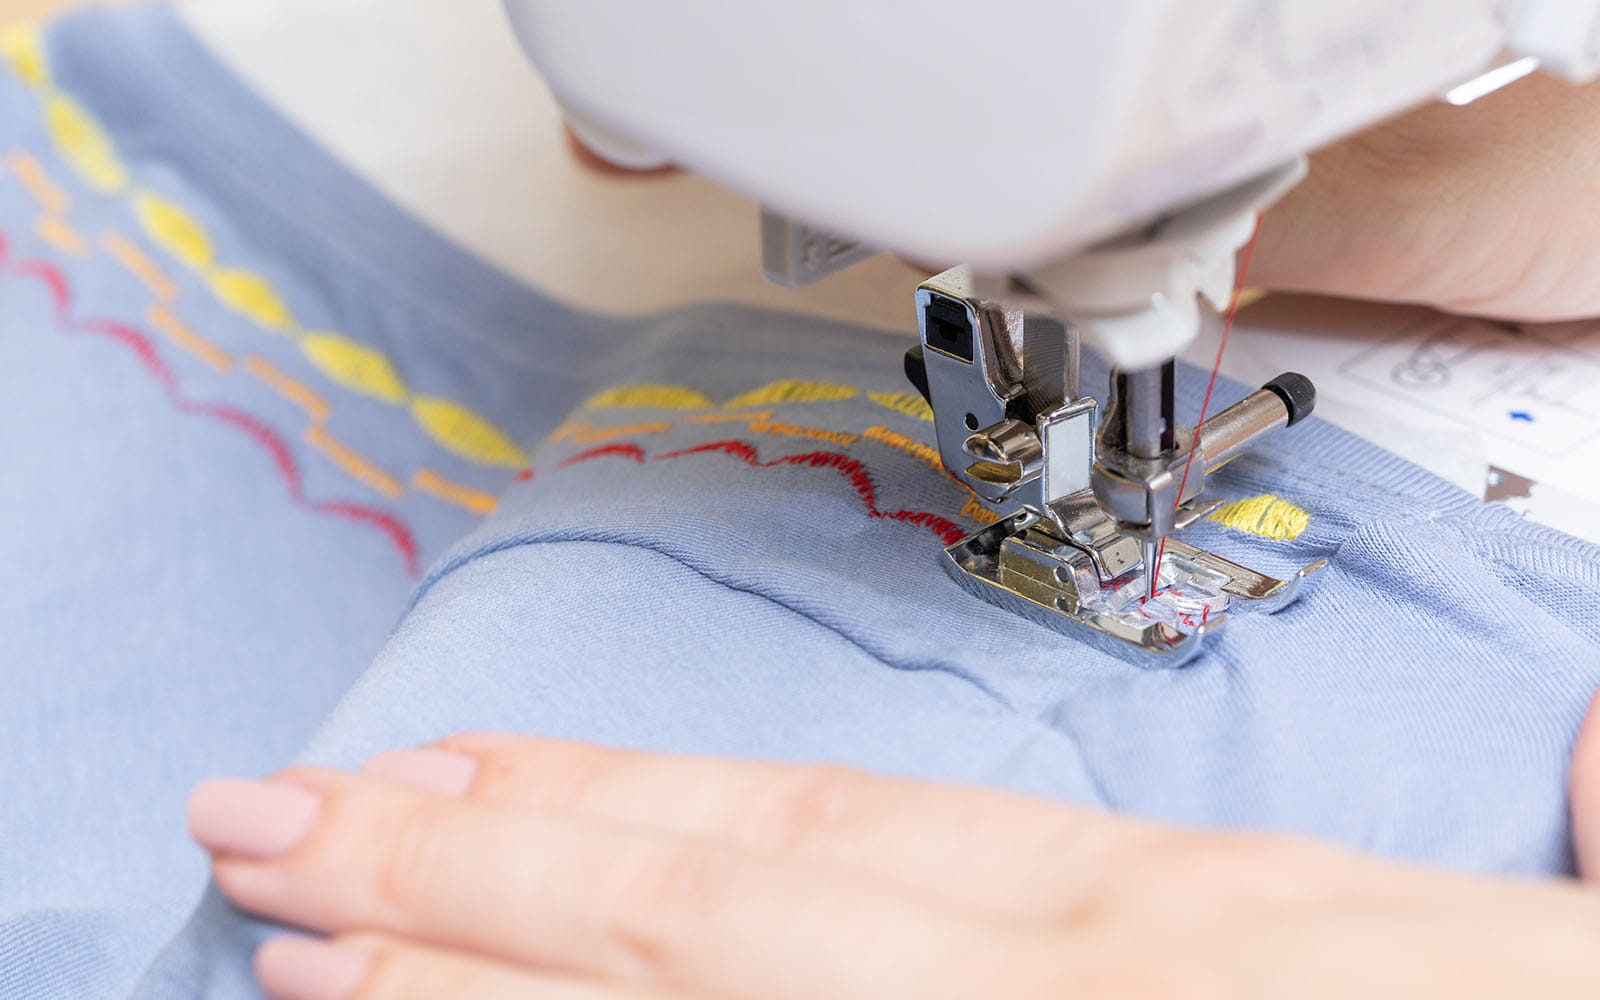 Sewing decorative stitches round blue T-shirt neckline